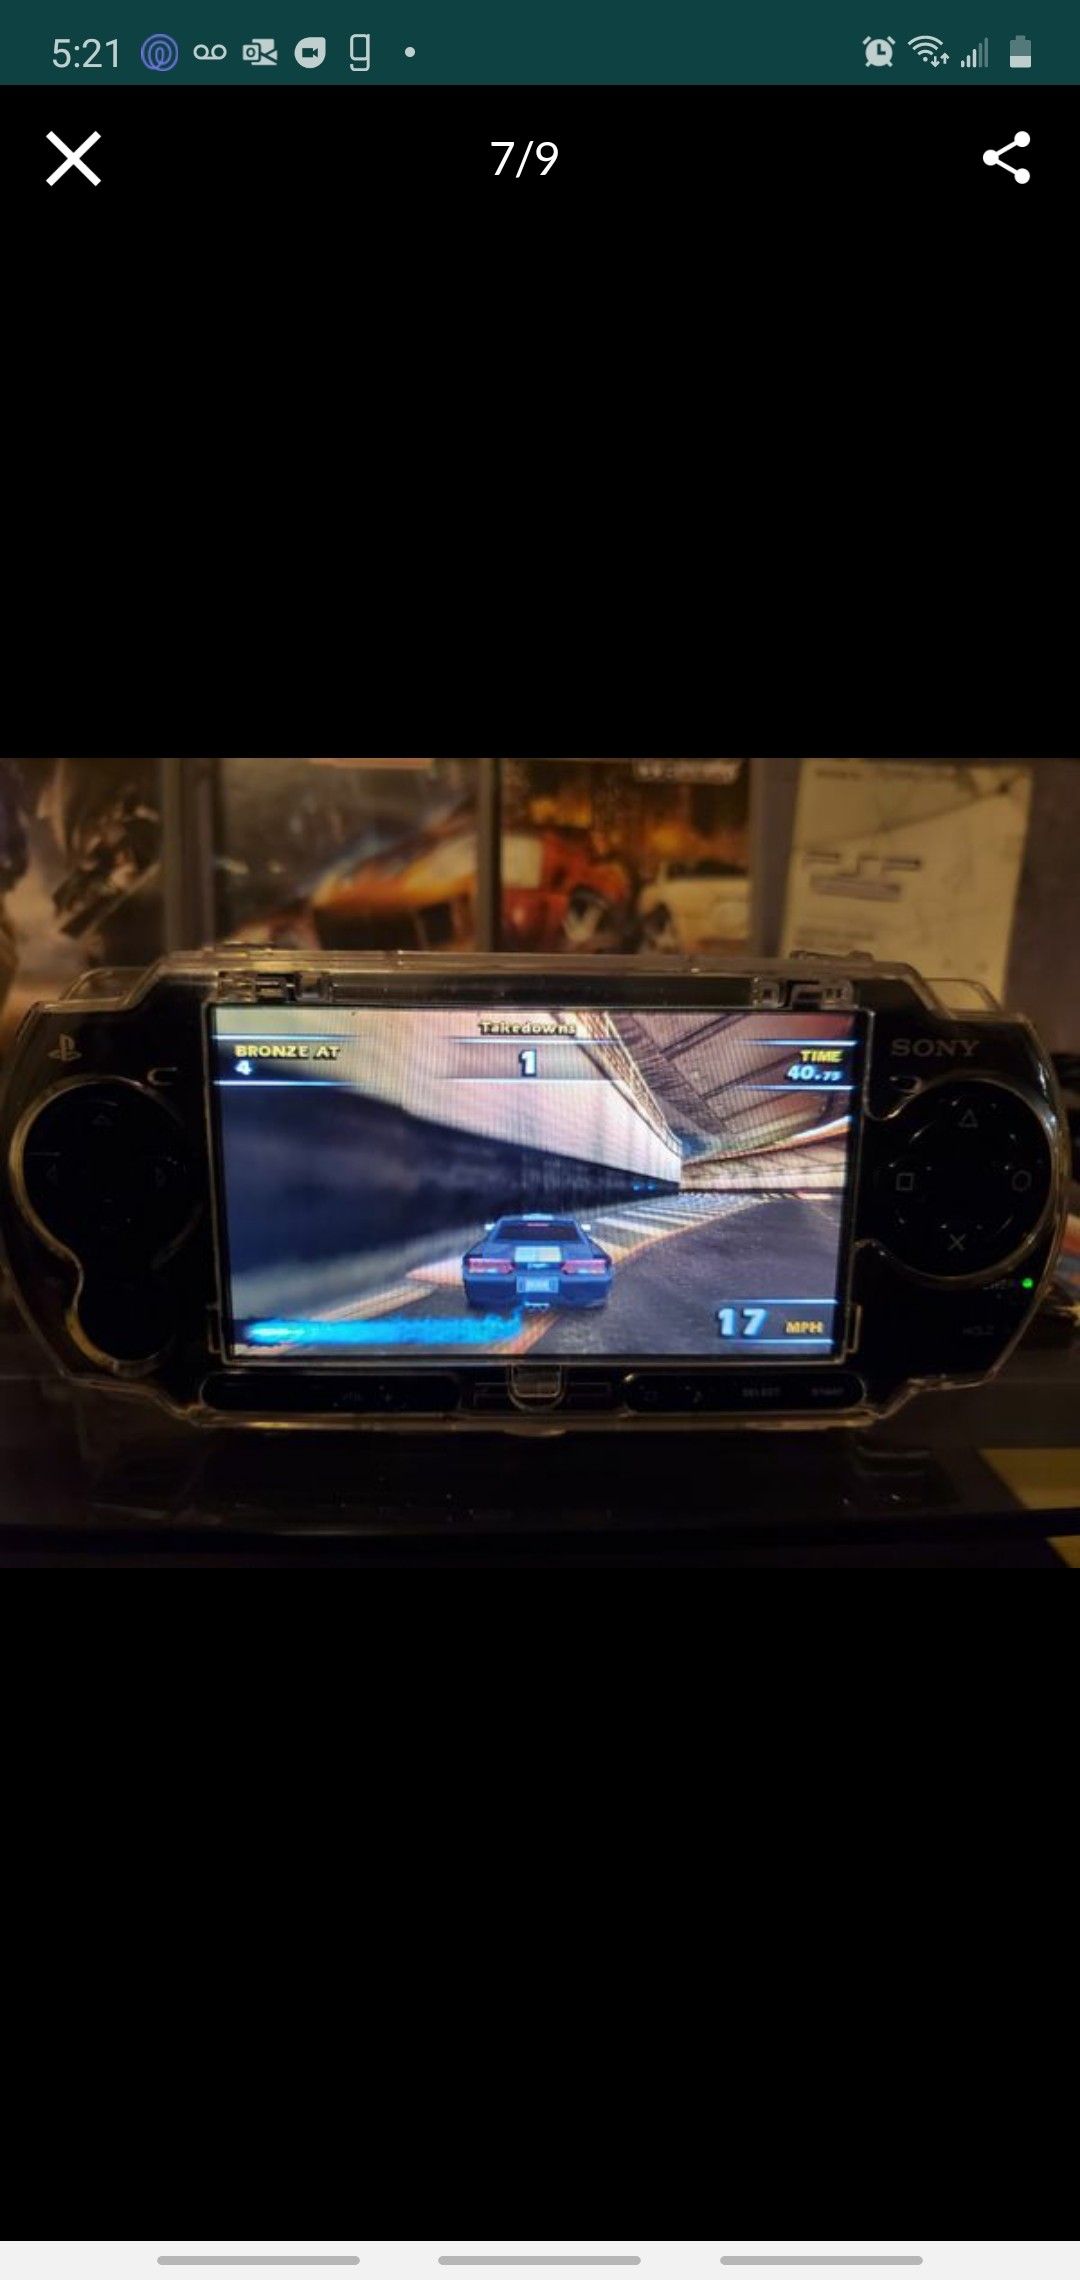 Sony PSP - 1001 Desbloqueado